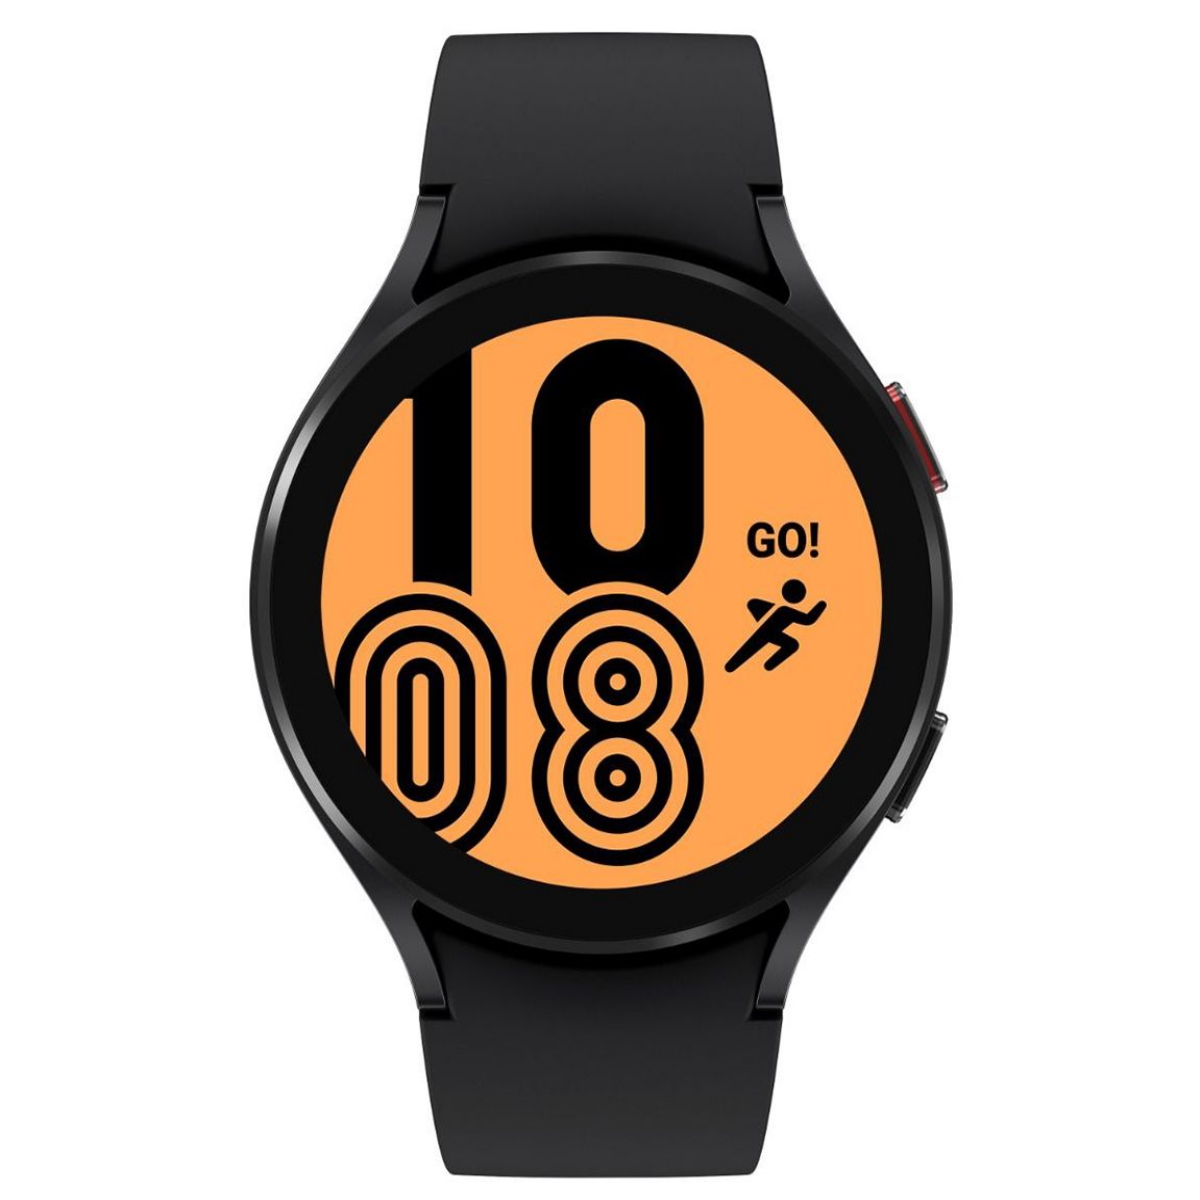 Smartwatch samsung galaxy watch 4 r875 44mm lte black